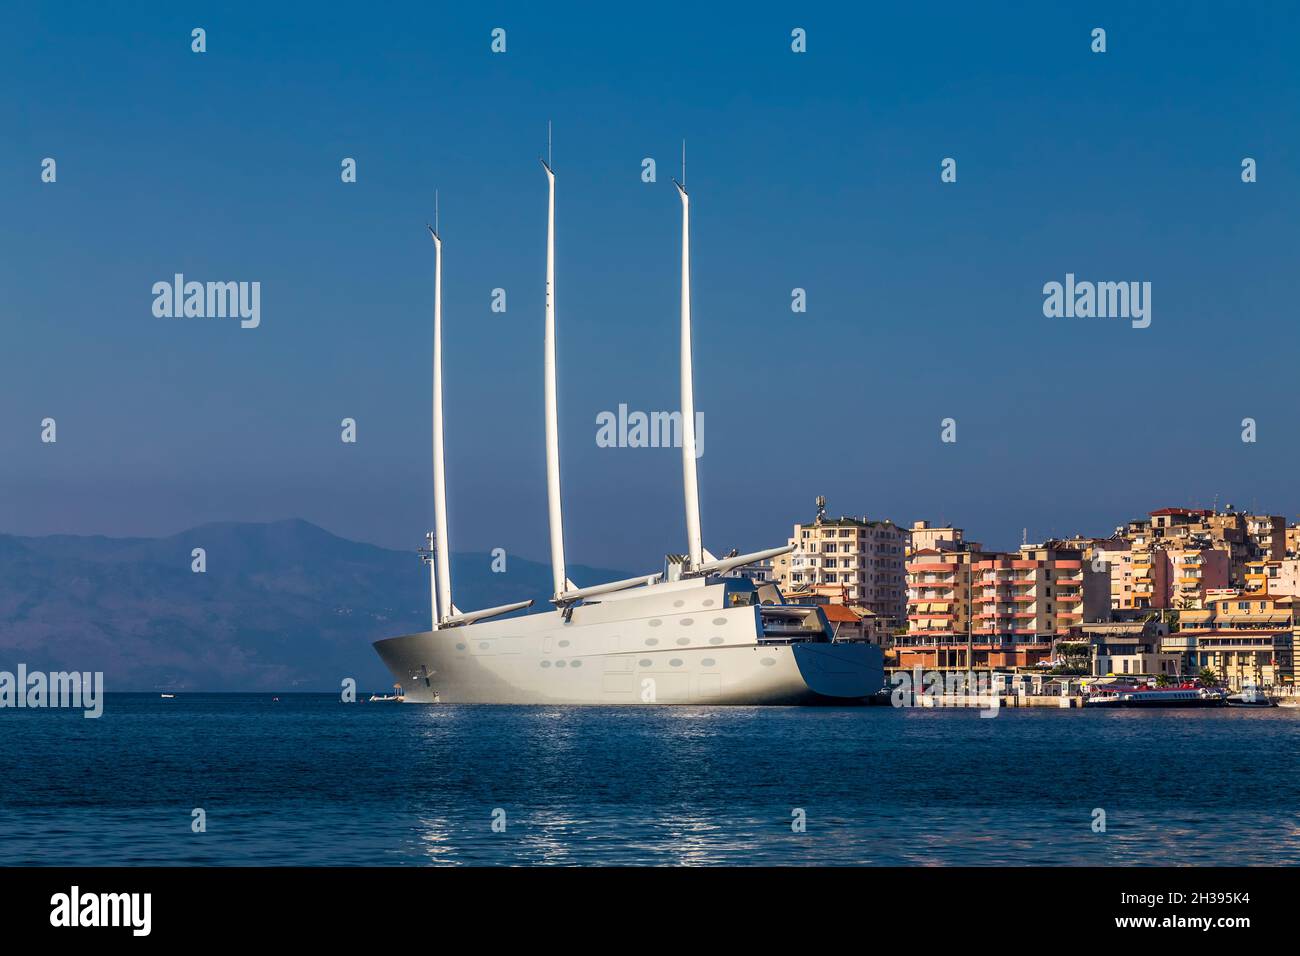 Saranda, Albanie - 23 septembre 2018 - 'voile Yacht A', SYA, l'un des yachts de voile biggenvosst dans le monde ancré dans le port de Saranda.Oui Banque D'Images